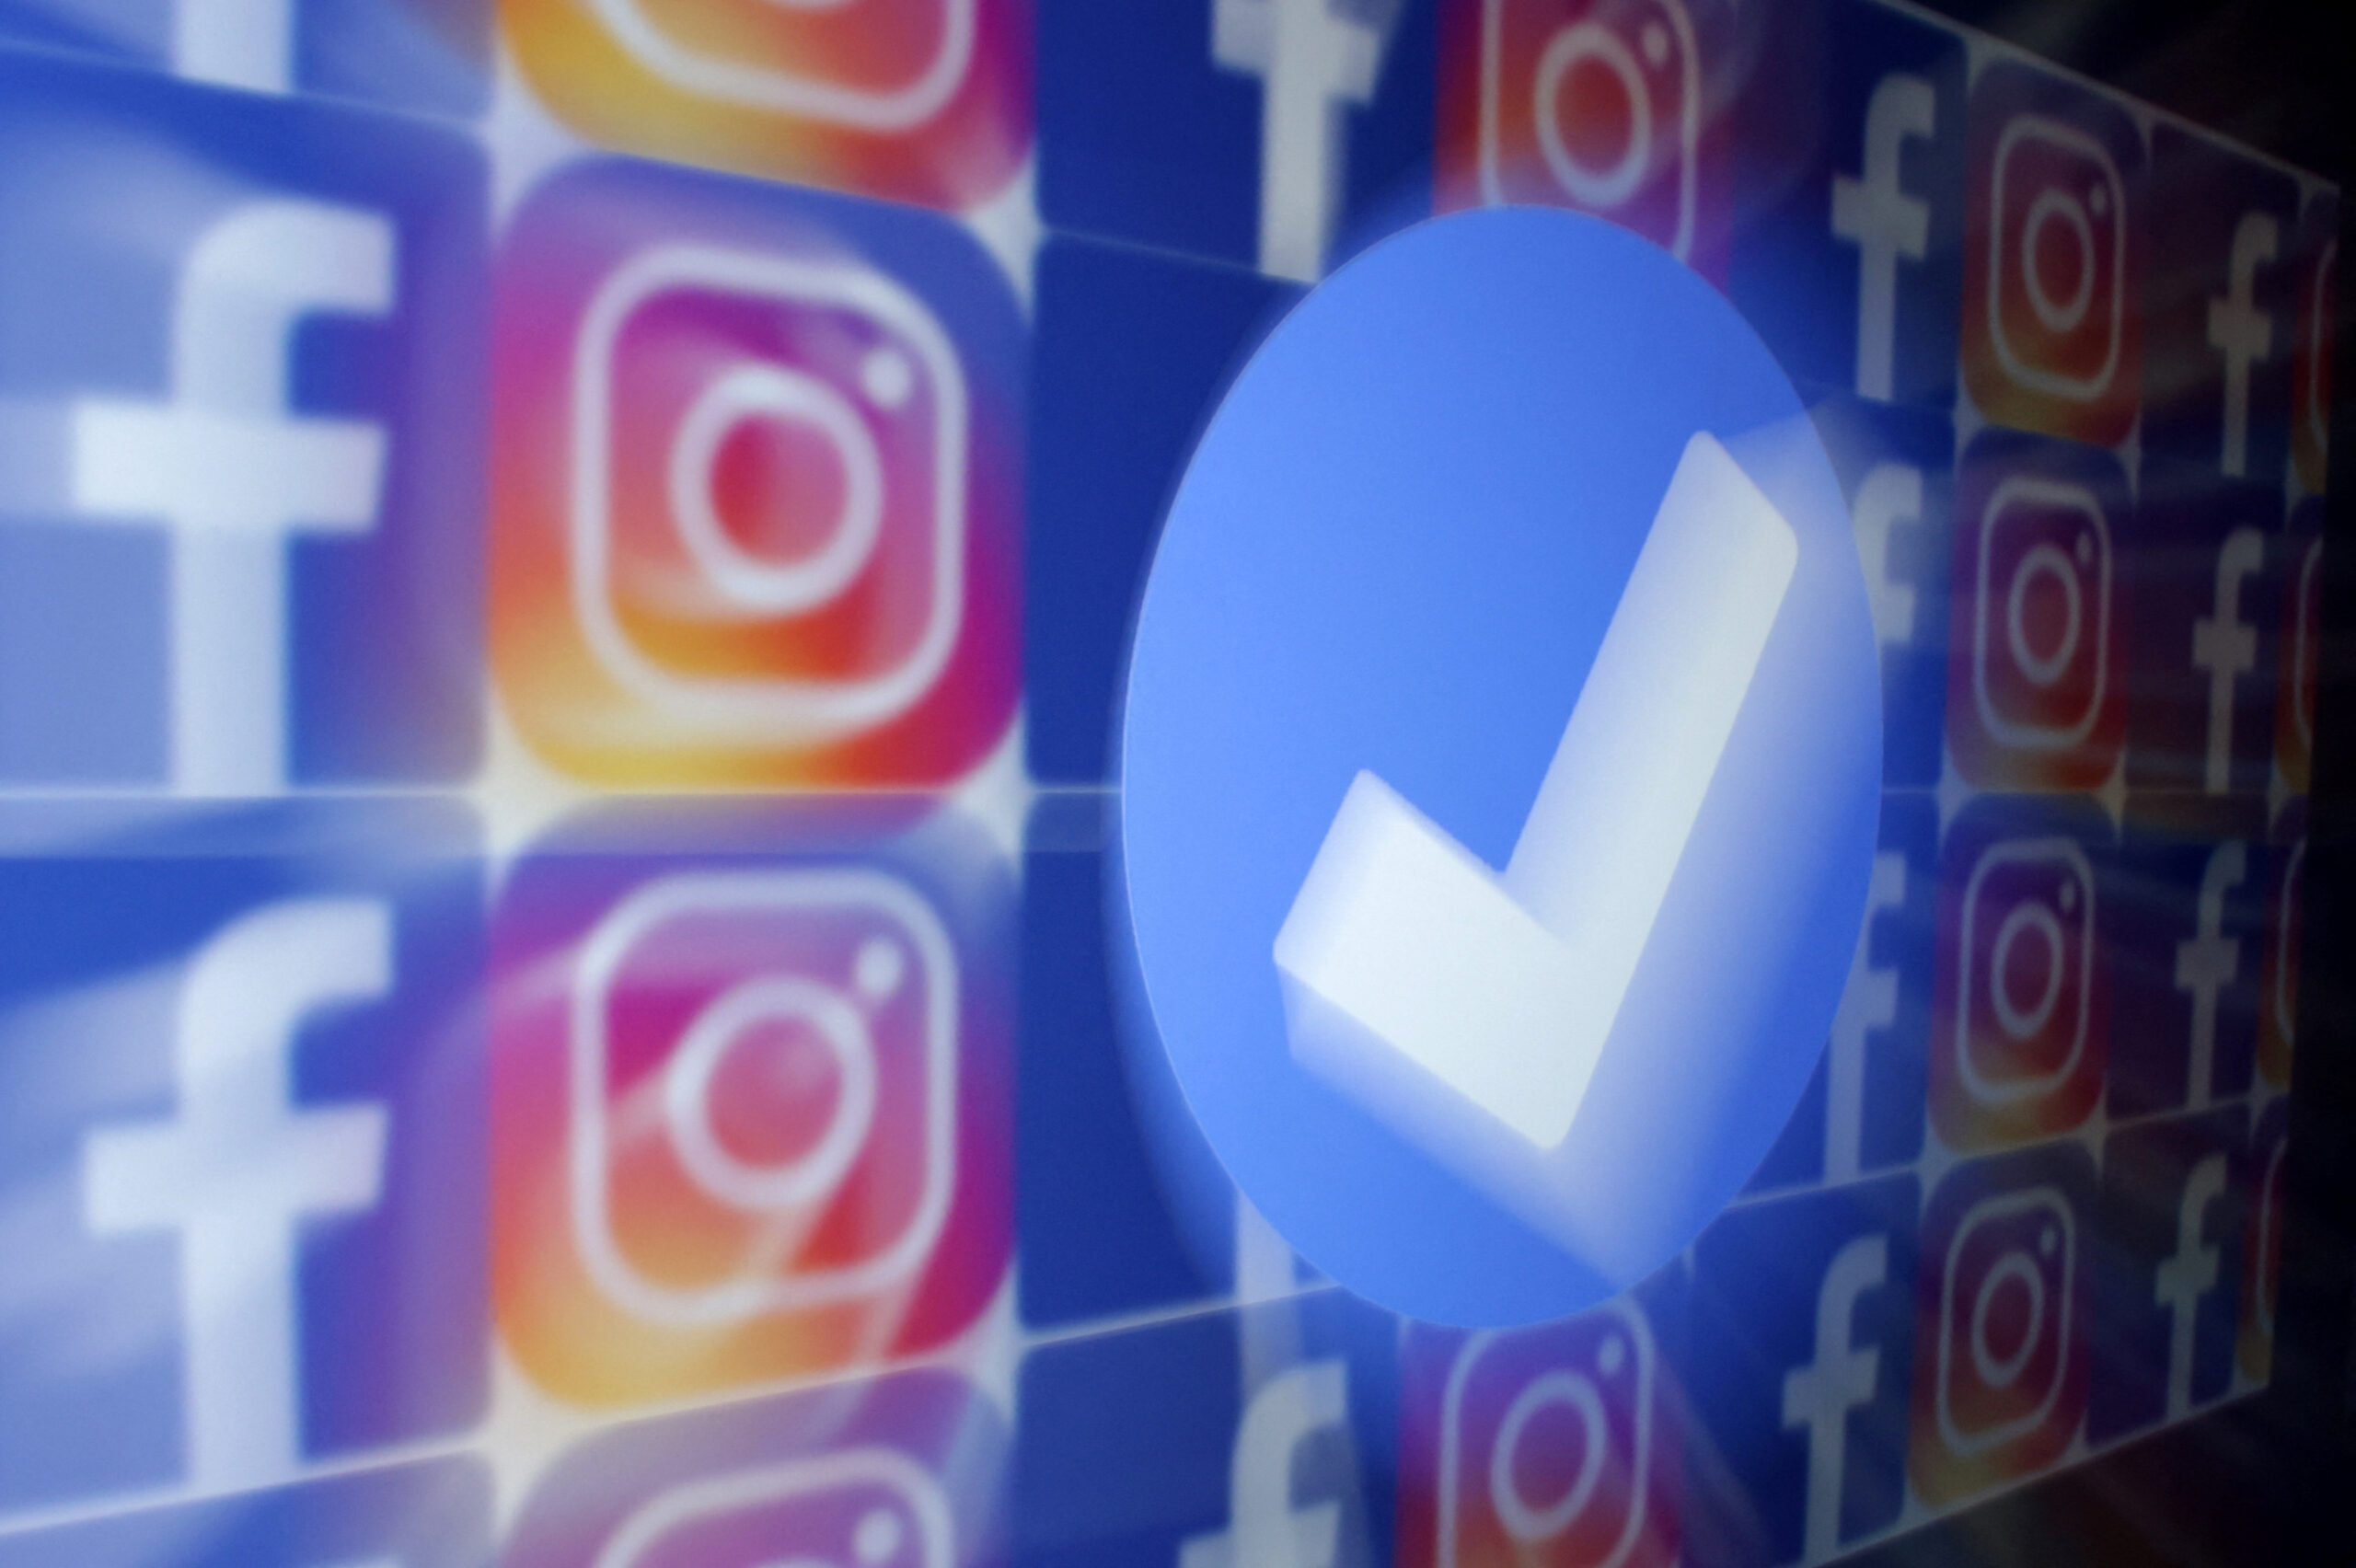 Les logos de Facebook et Instagram. /Illustration partagée le 19 janvier 2023/REUTERS/Dado Ruvic